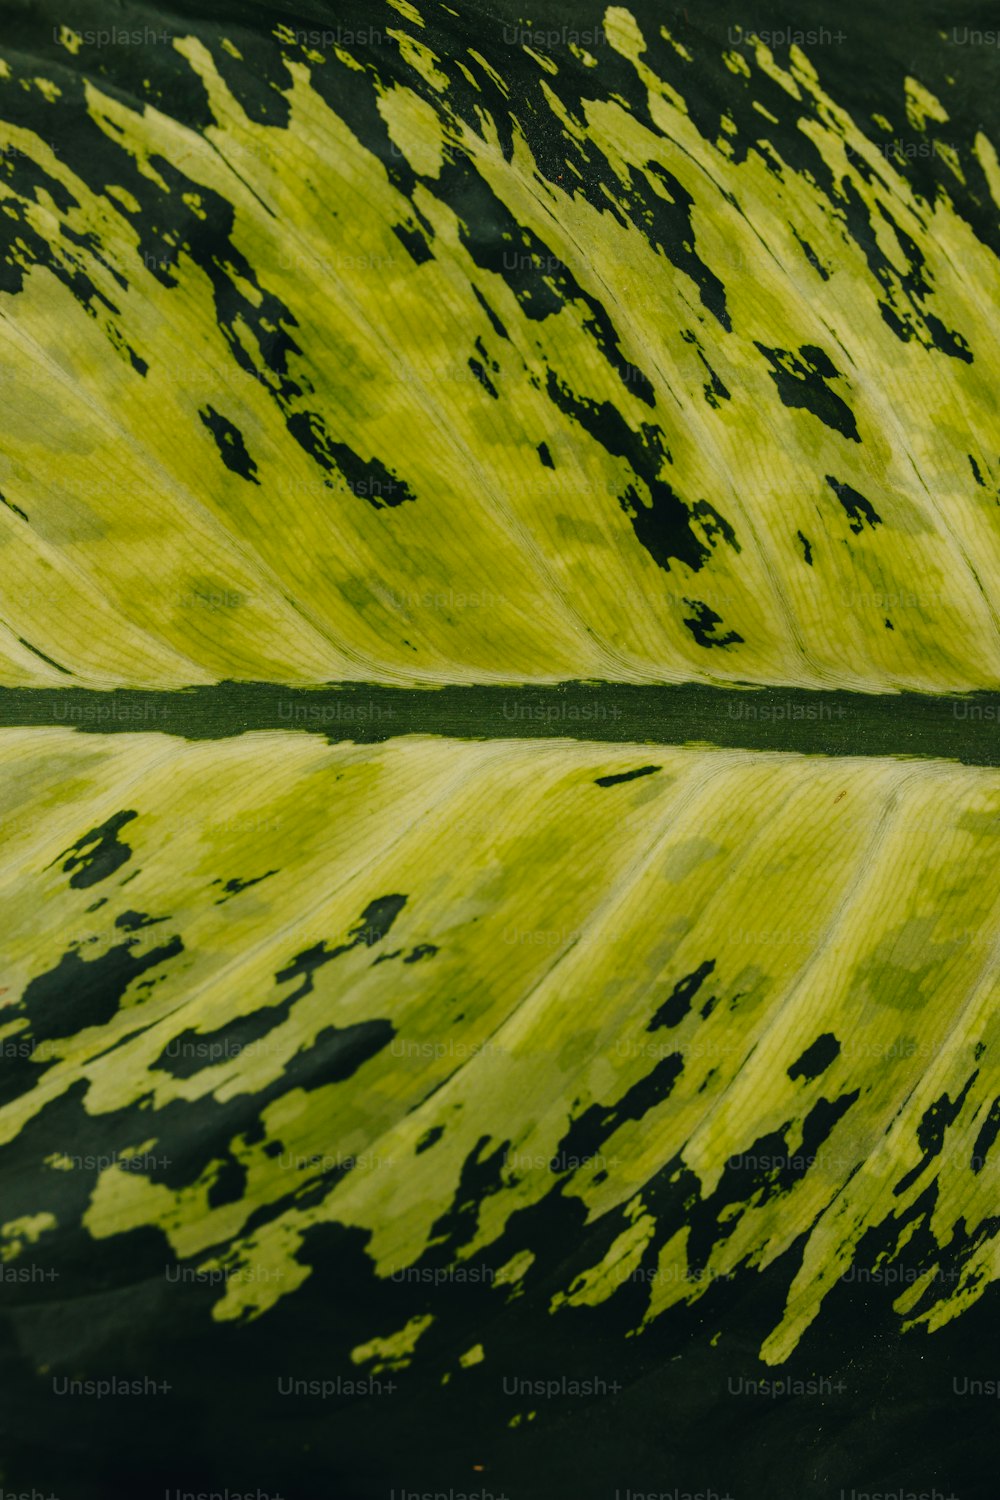 Un primer plano de una hoja verde con manchas negras